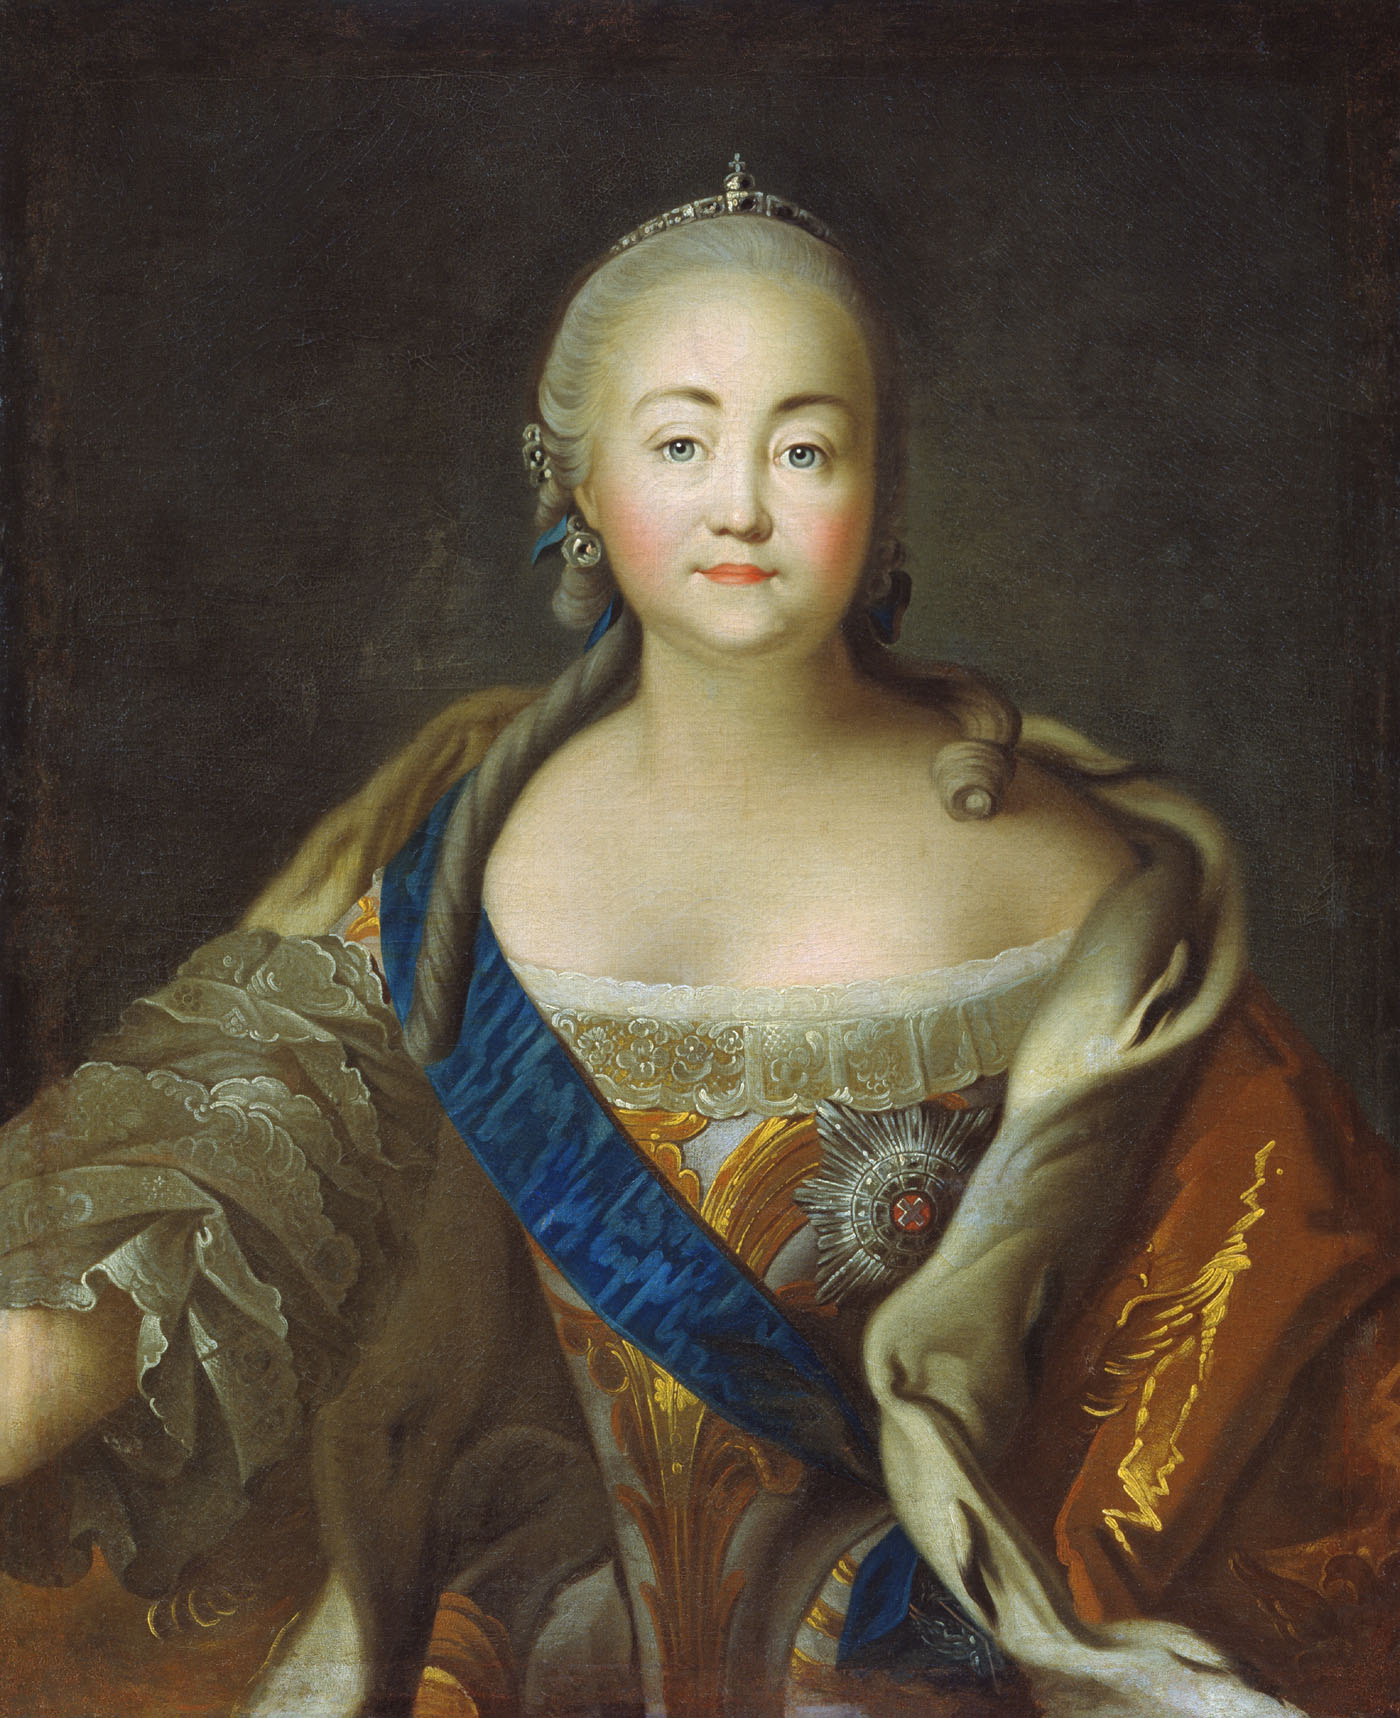 Аргунов И.. Портрет императрицы Елизаветы Петровны. Конец 1750 - 1760-е